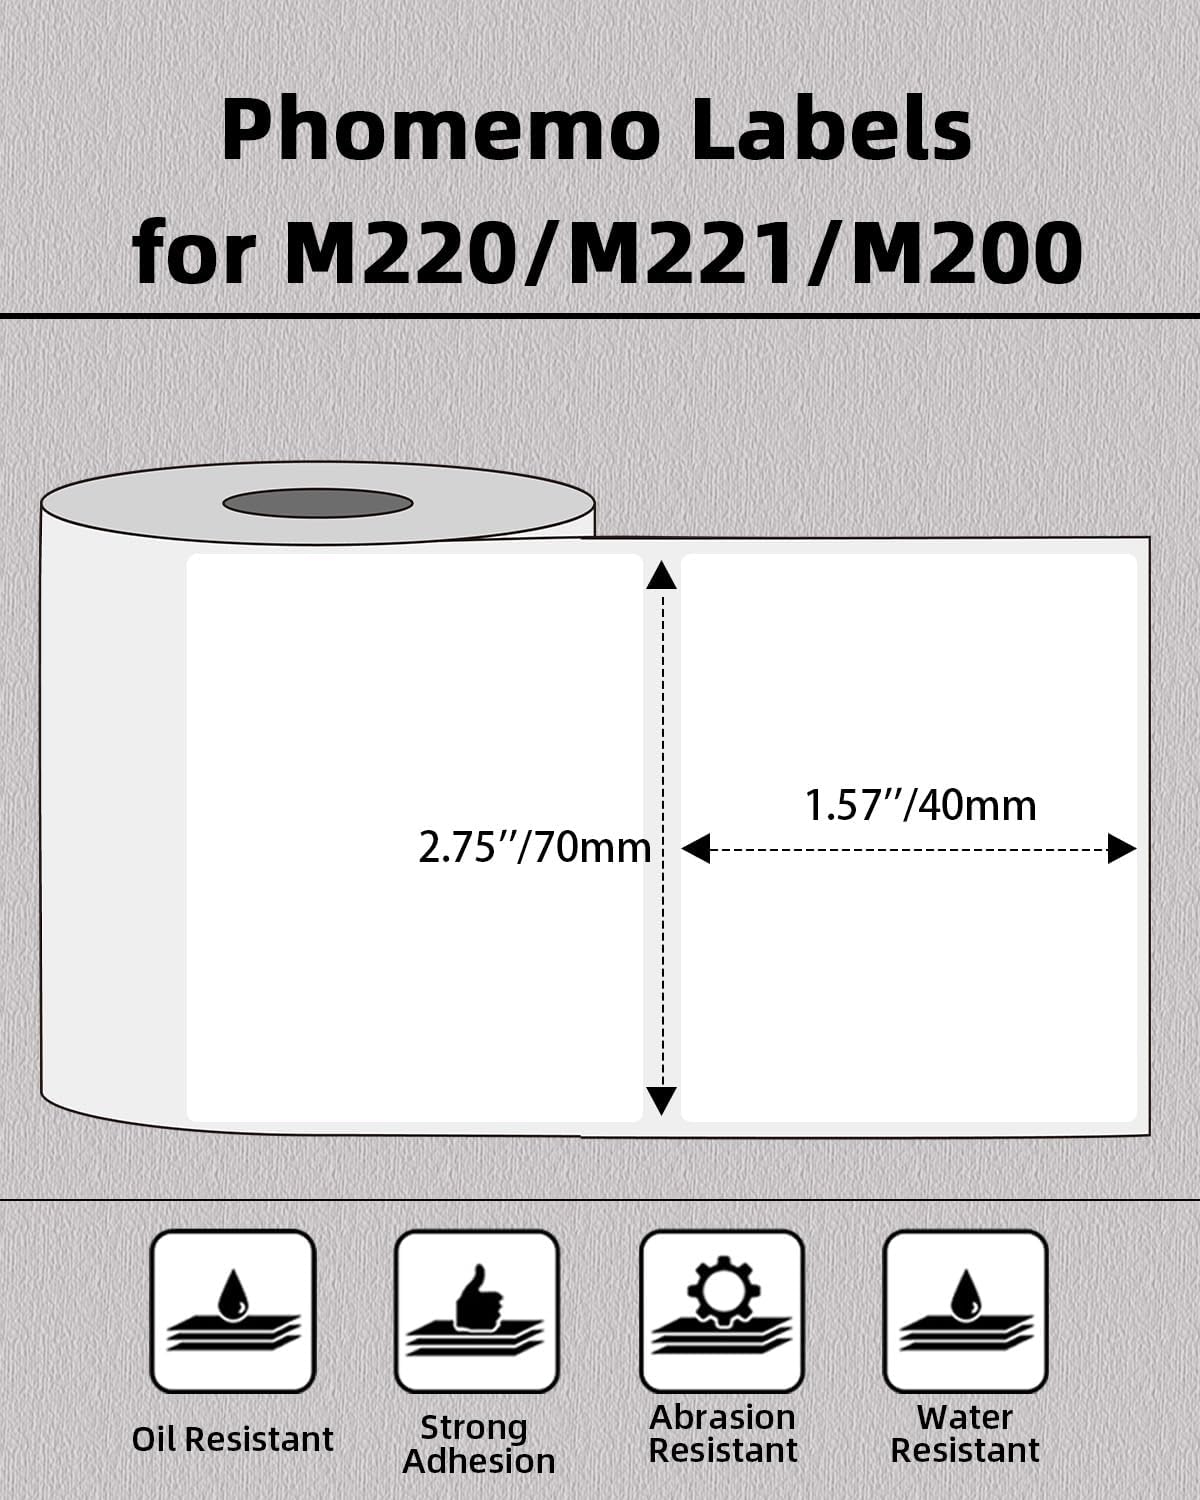 Phomemo 70 X 40mm Square White Label for Phomemo M200/M220/M221 Label Printer